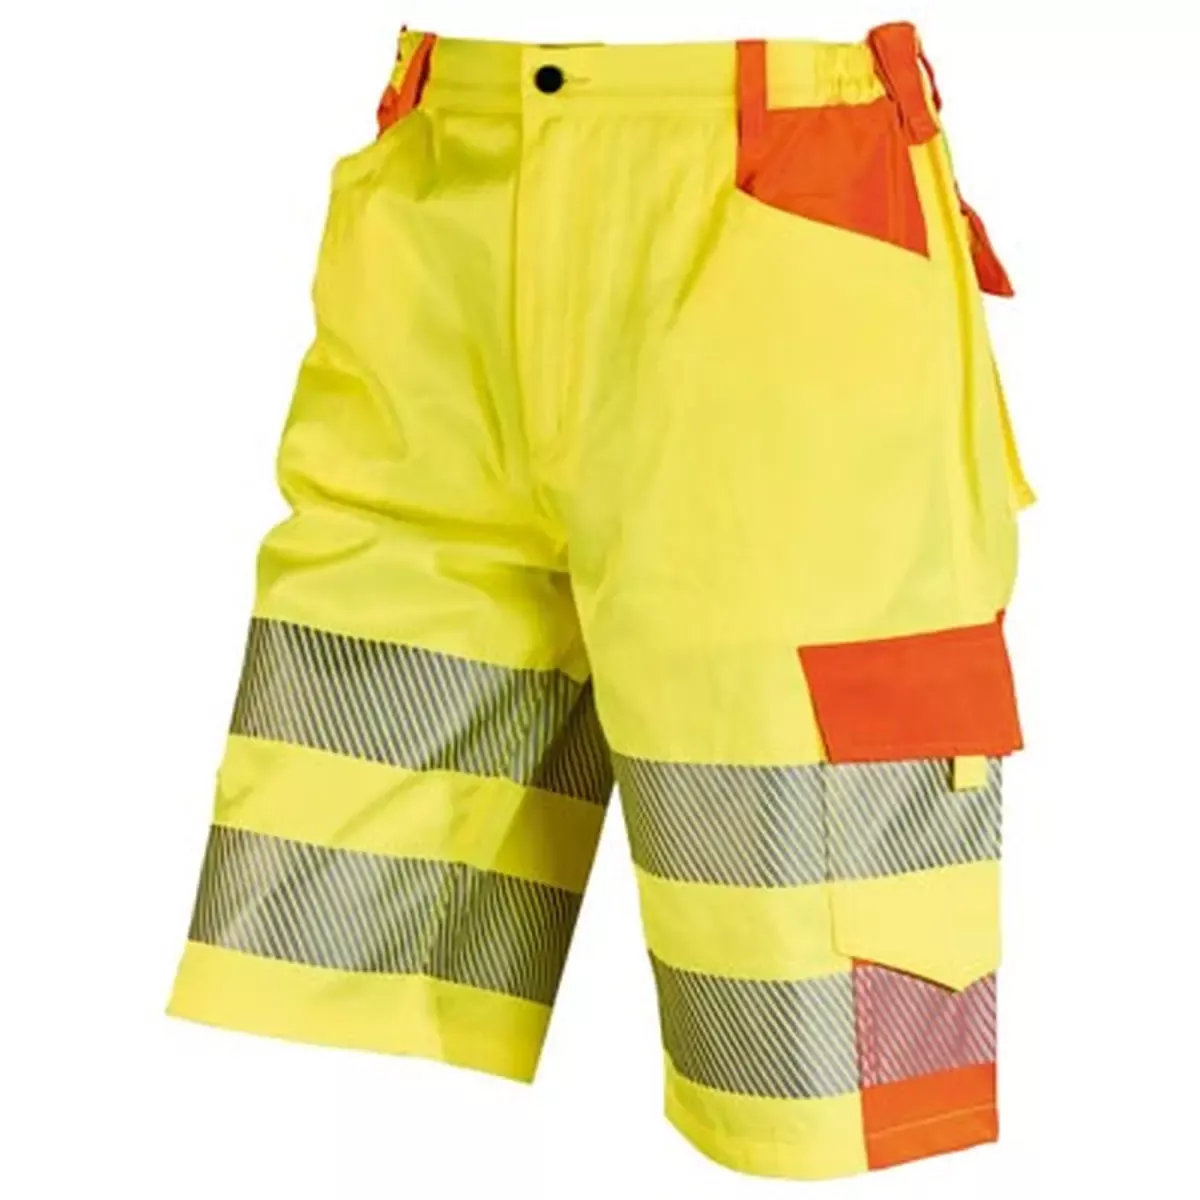 Bekleidung Warnschutz-Bermuda YO-HiViz, Farbe gelb orange, Gr.54 für Arbeitssicherheit